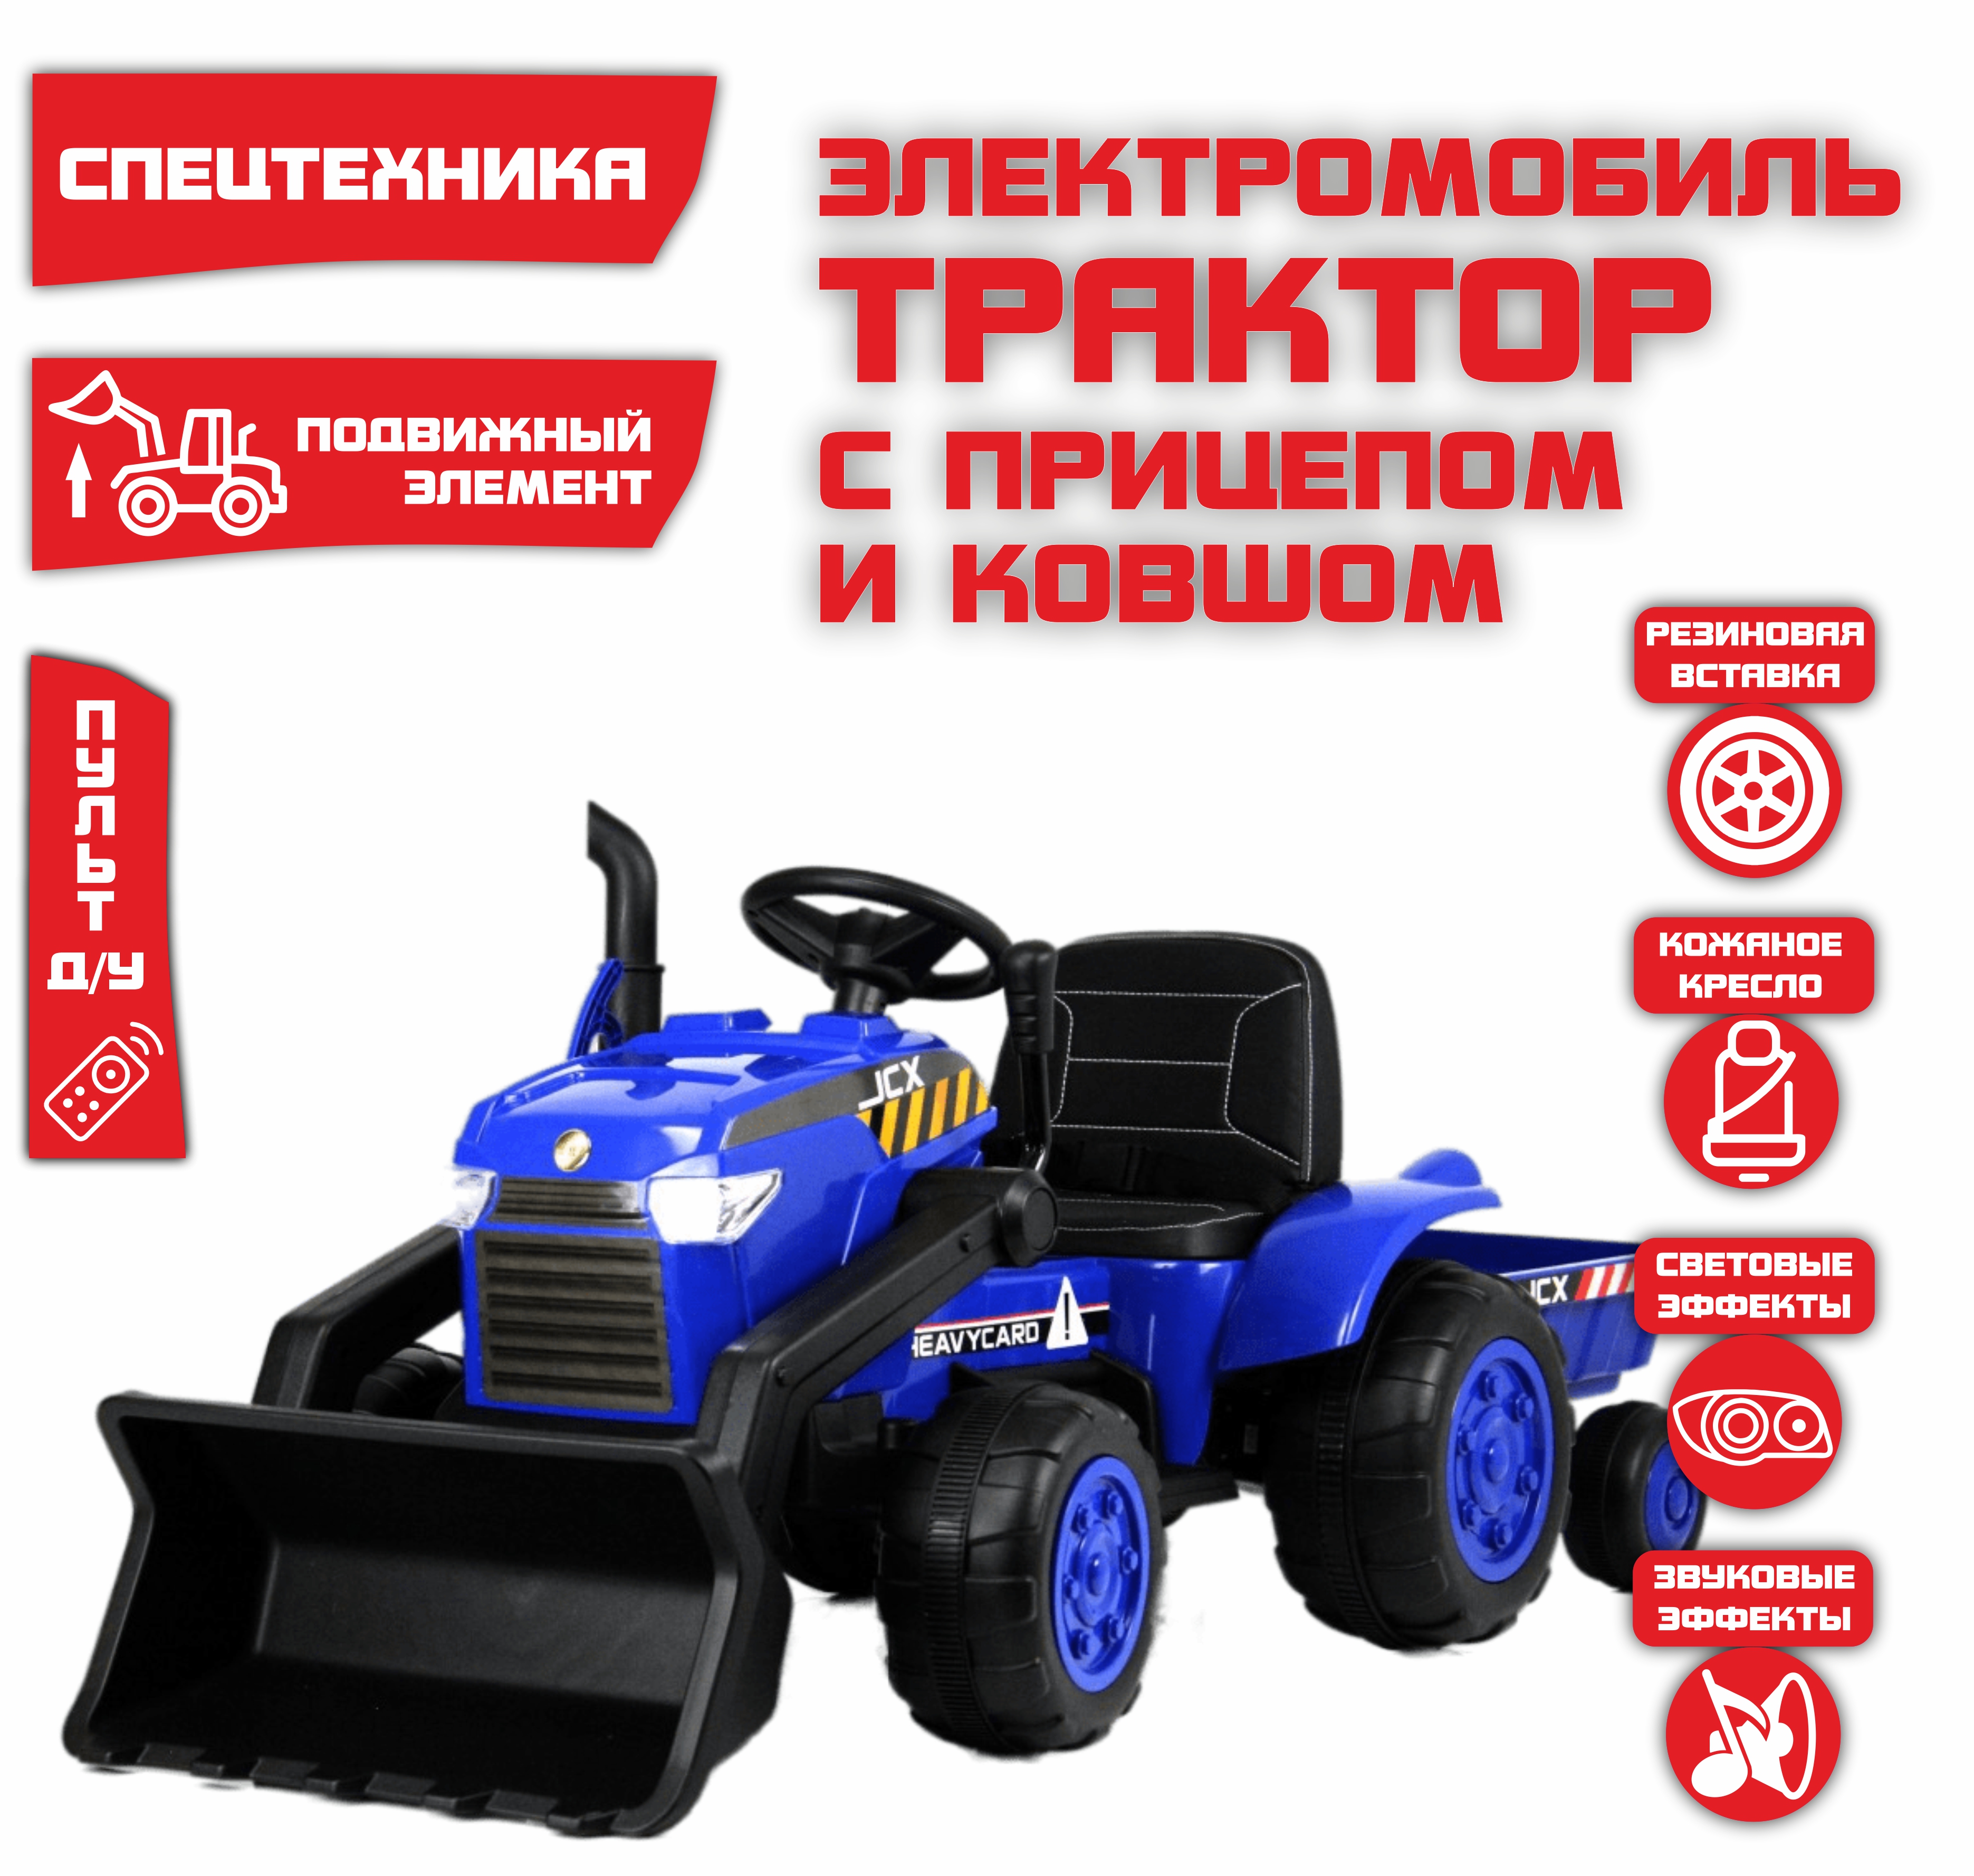 Электромобиль детский NOVAKIDS трактор с прицепом S617 Синий + Пульт синий